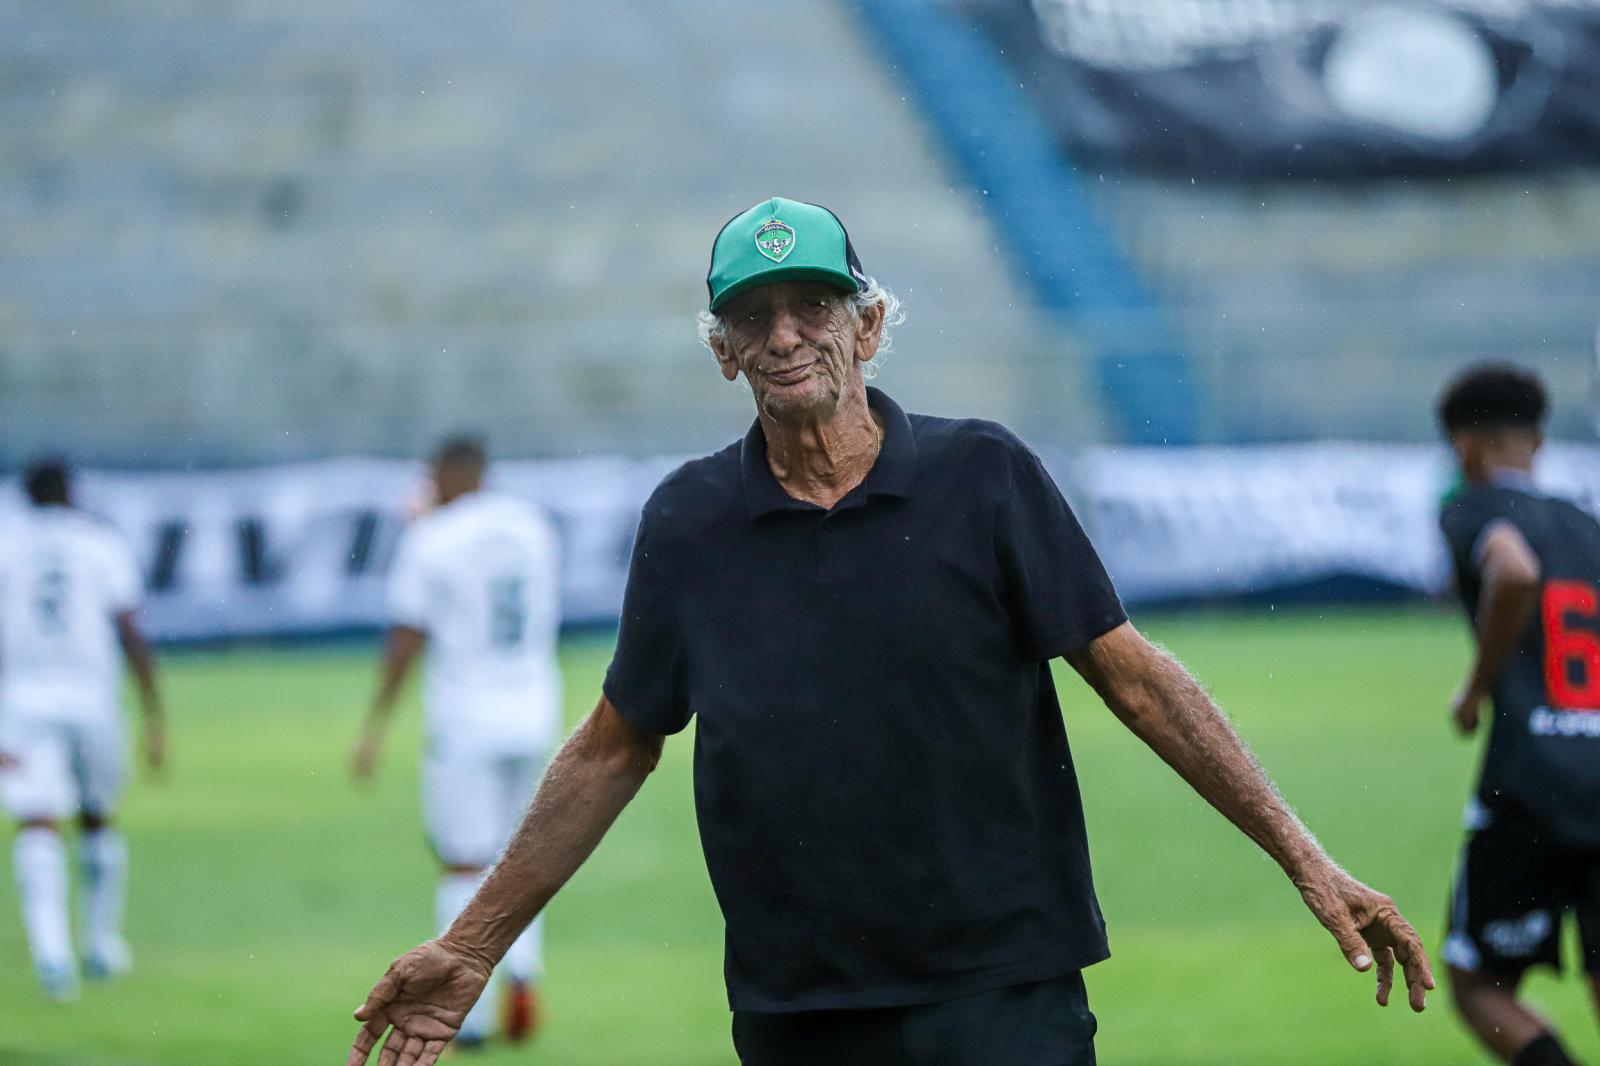 Manaus FC conclui preparação para enfrentar o São Raimundo